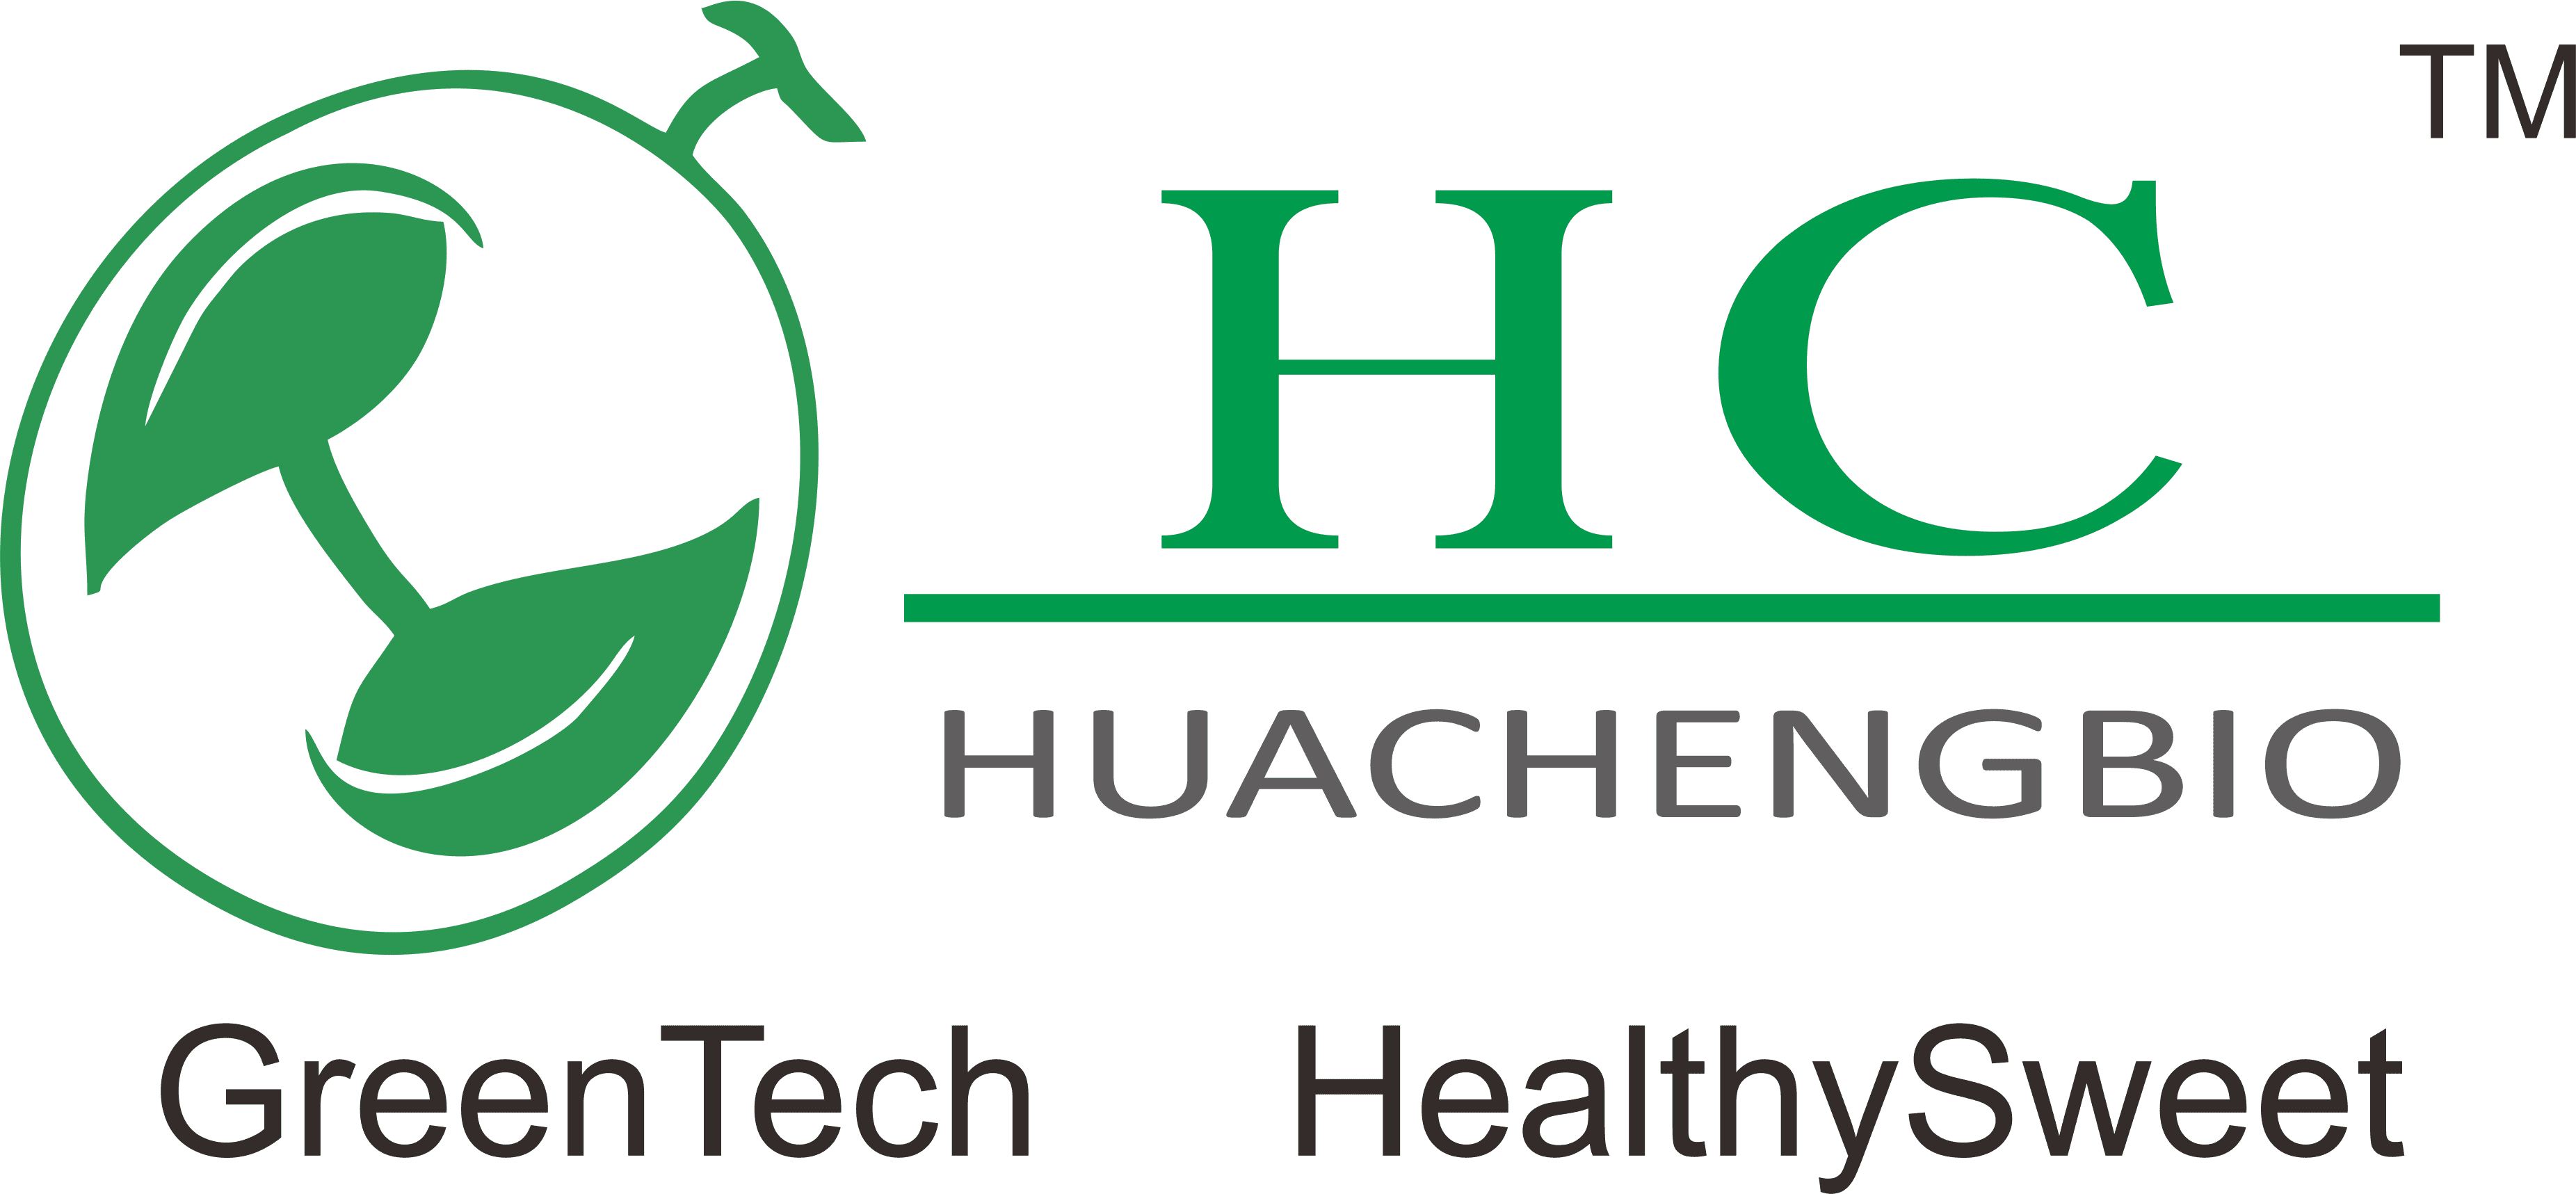 Hunan Huacheng Biotech,Inc